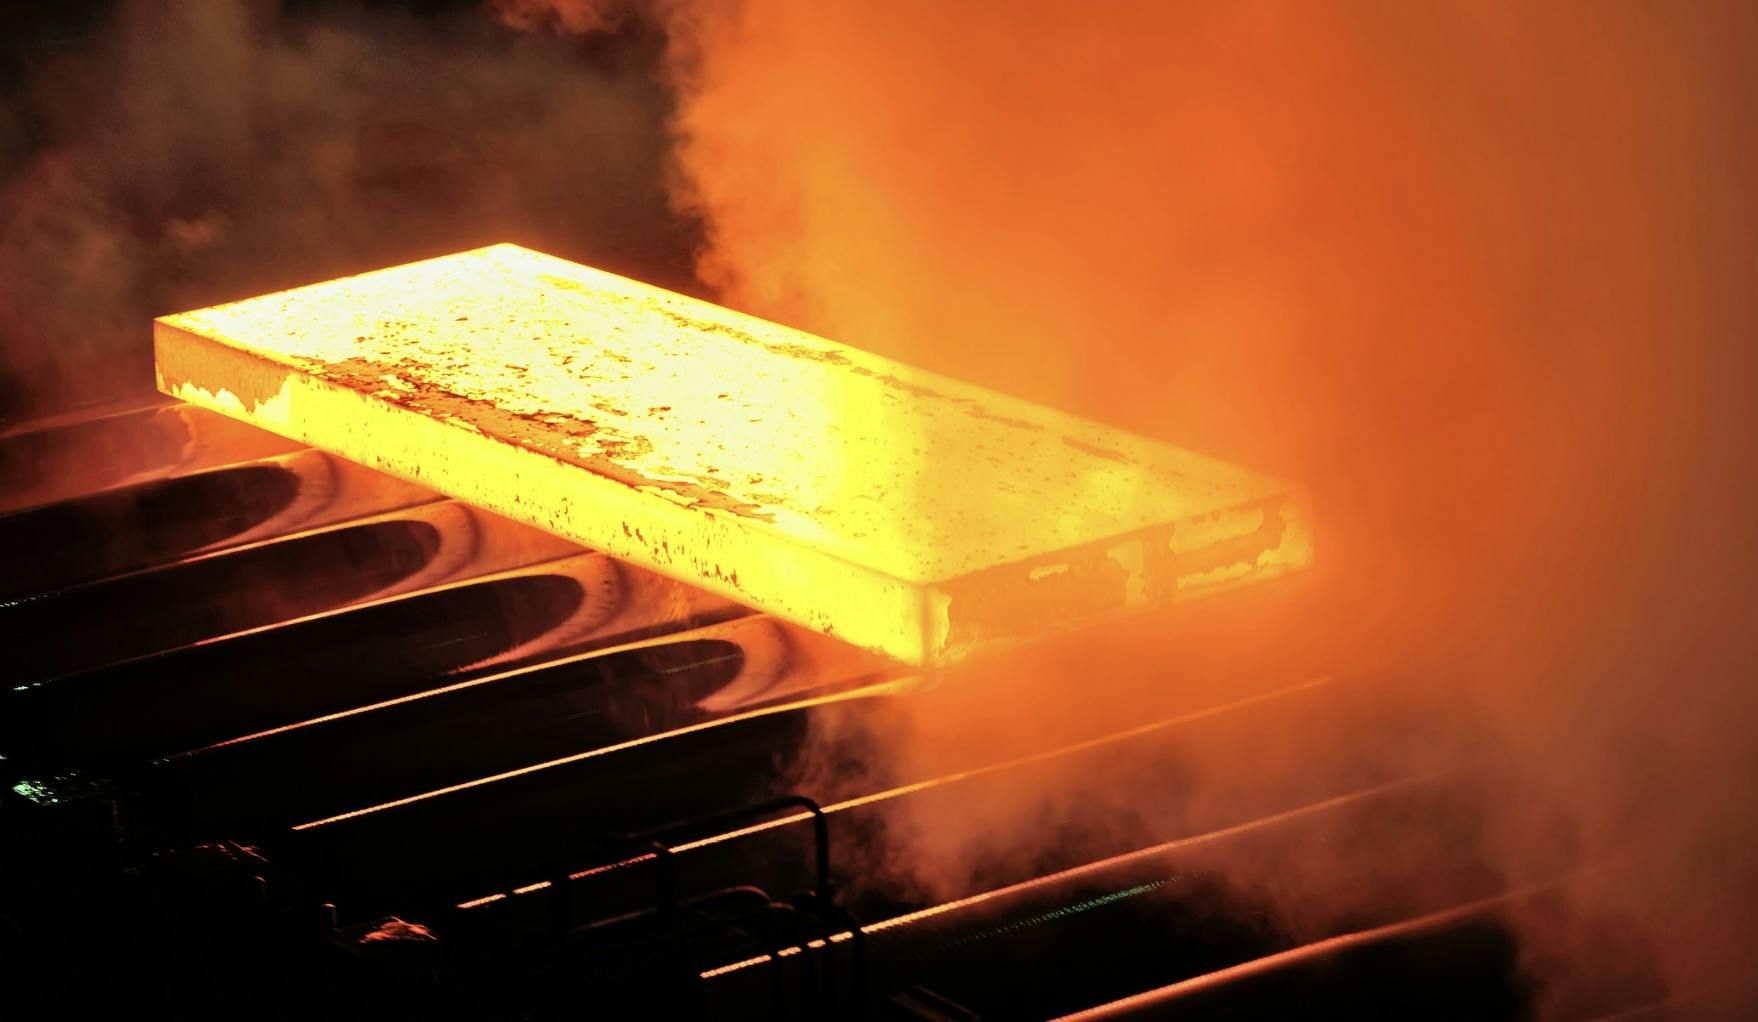 Steel Industry – Metals Processing